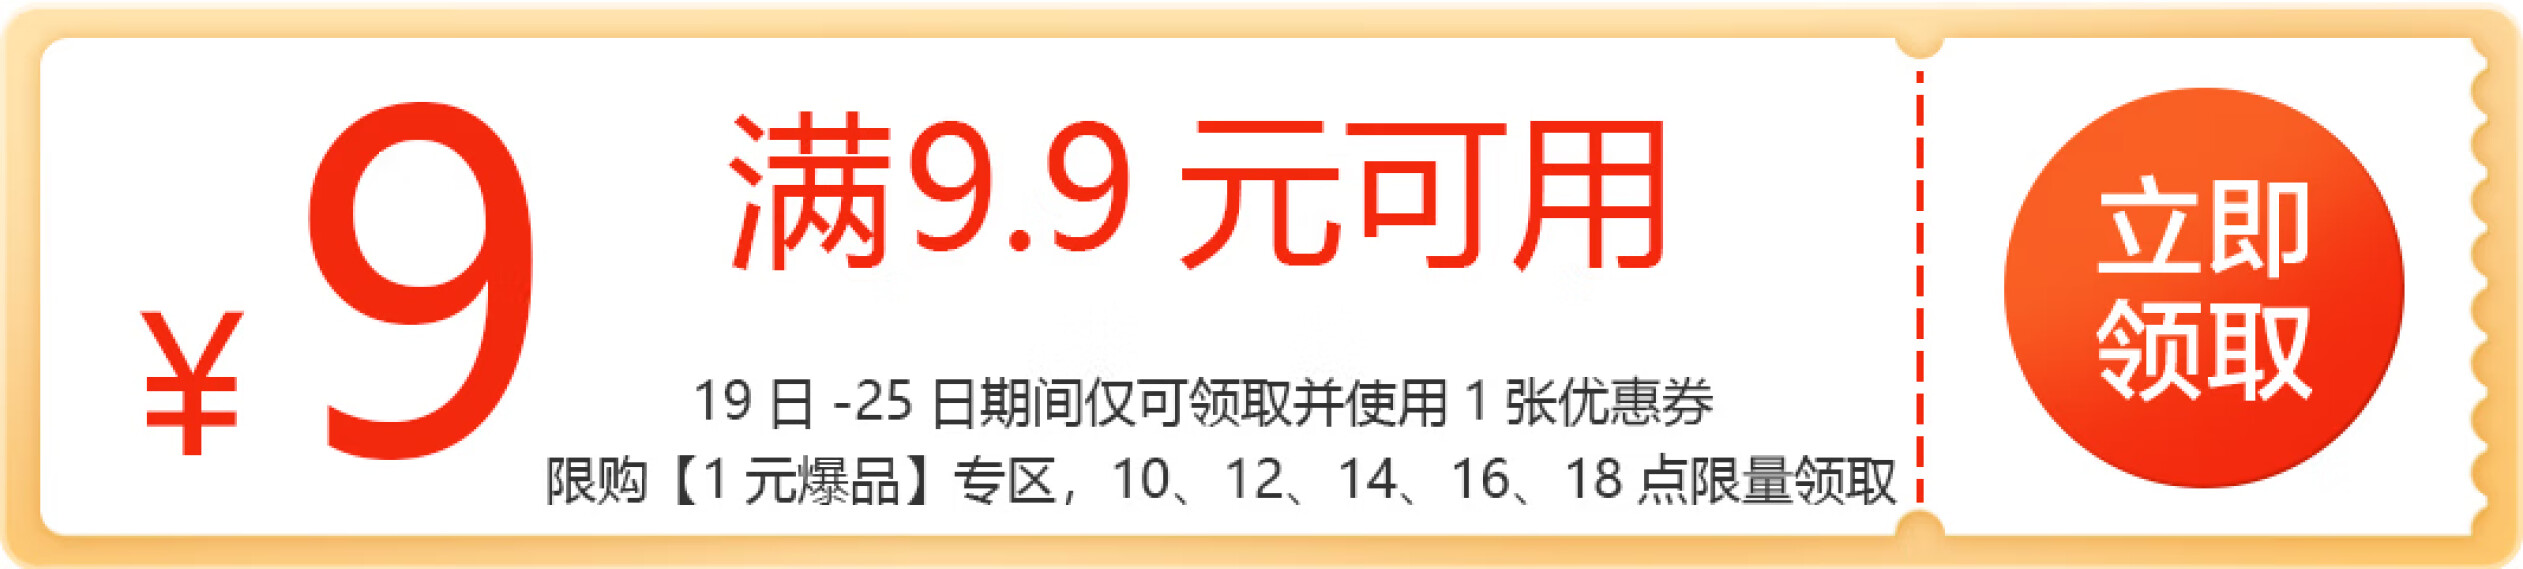 10点：京东商城 领满9.9减9元券